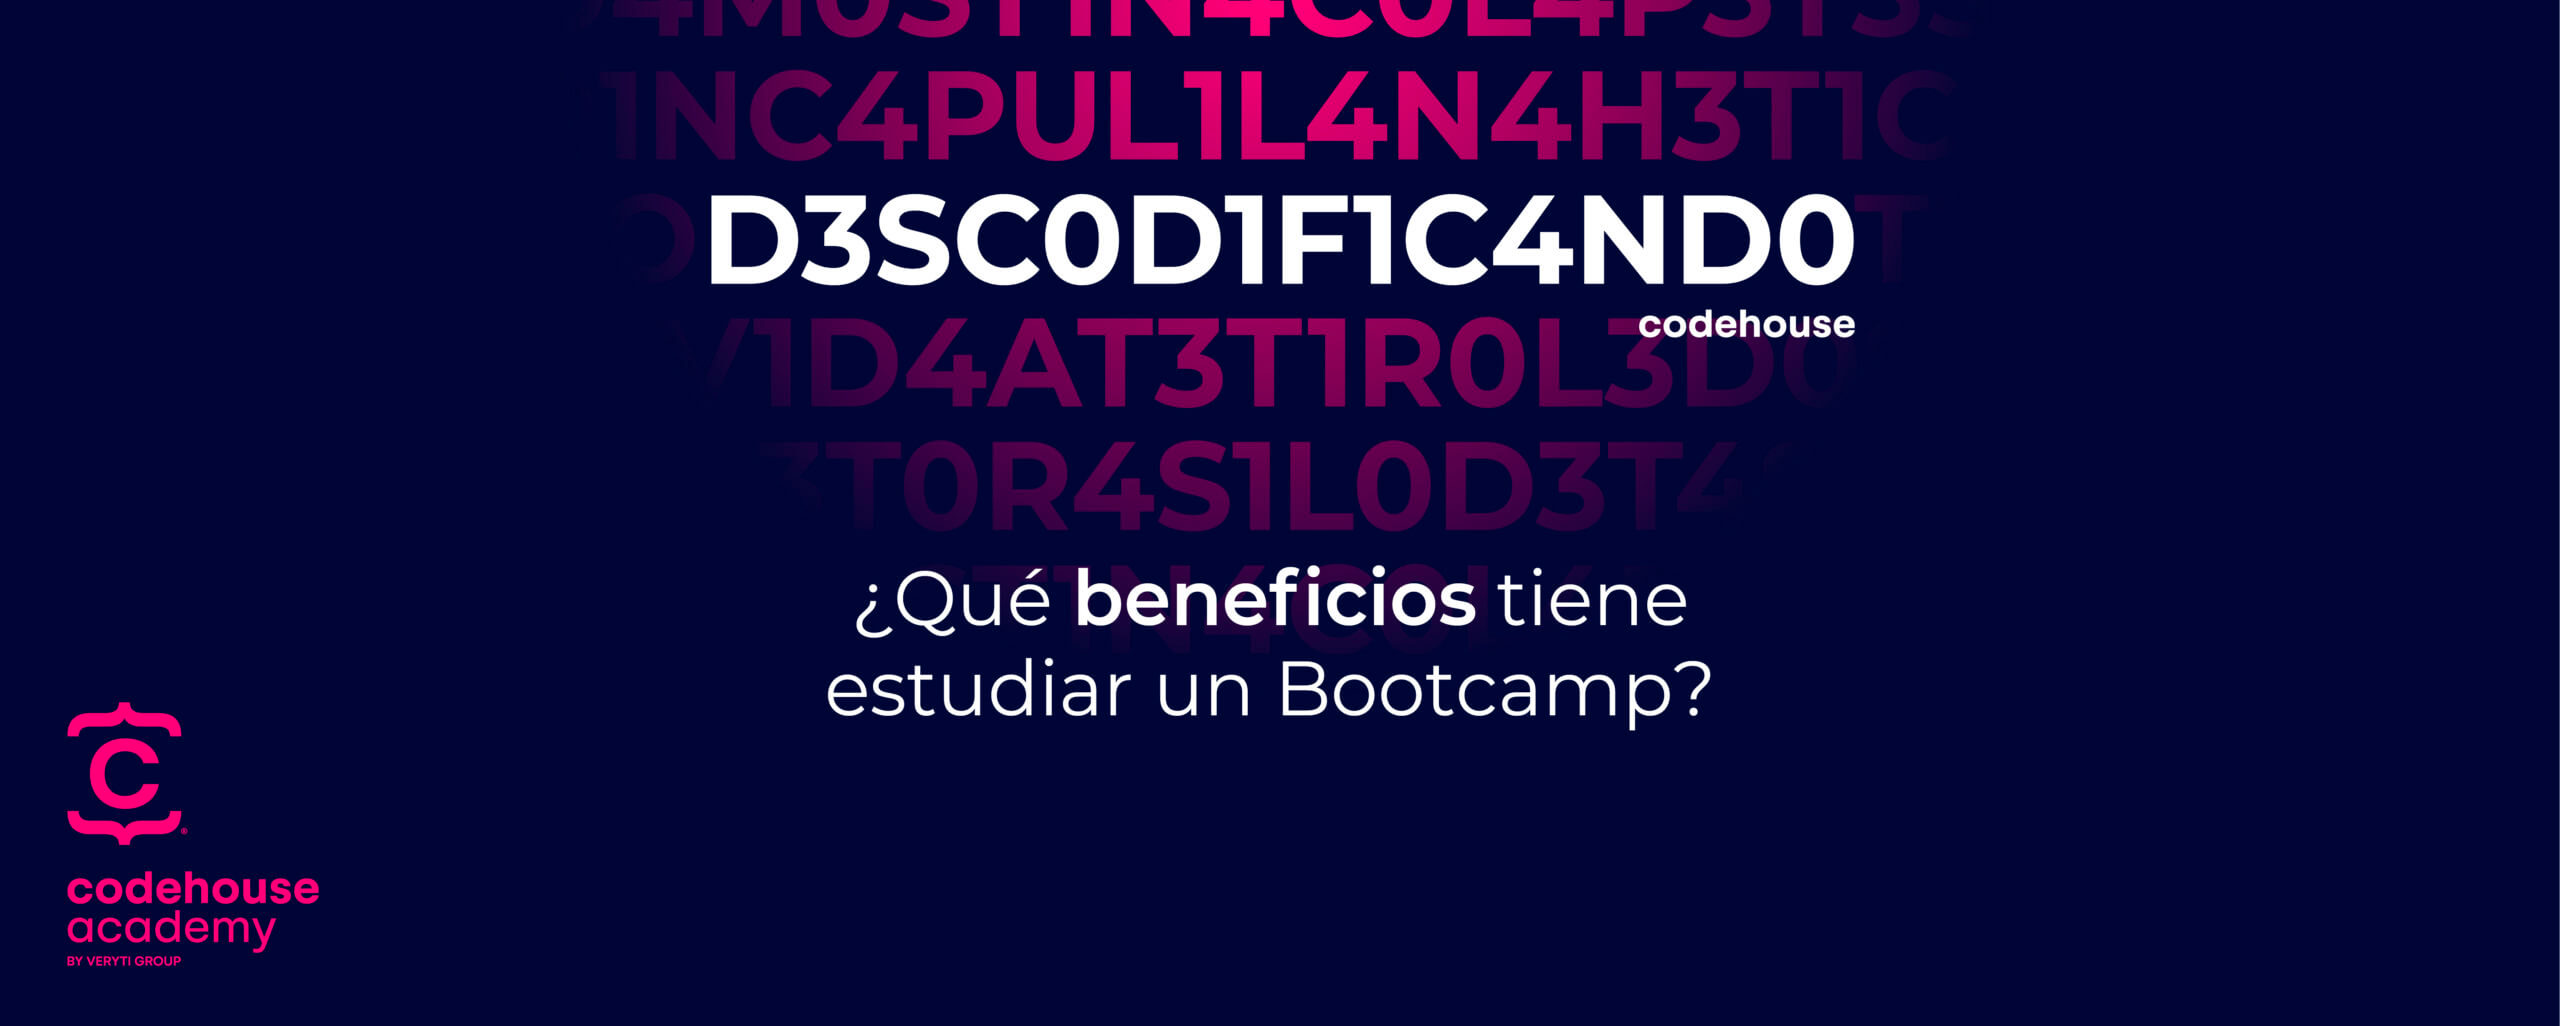 Beneficios de estudiar un bootcamp